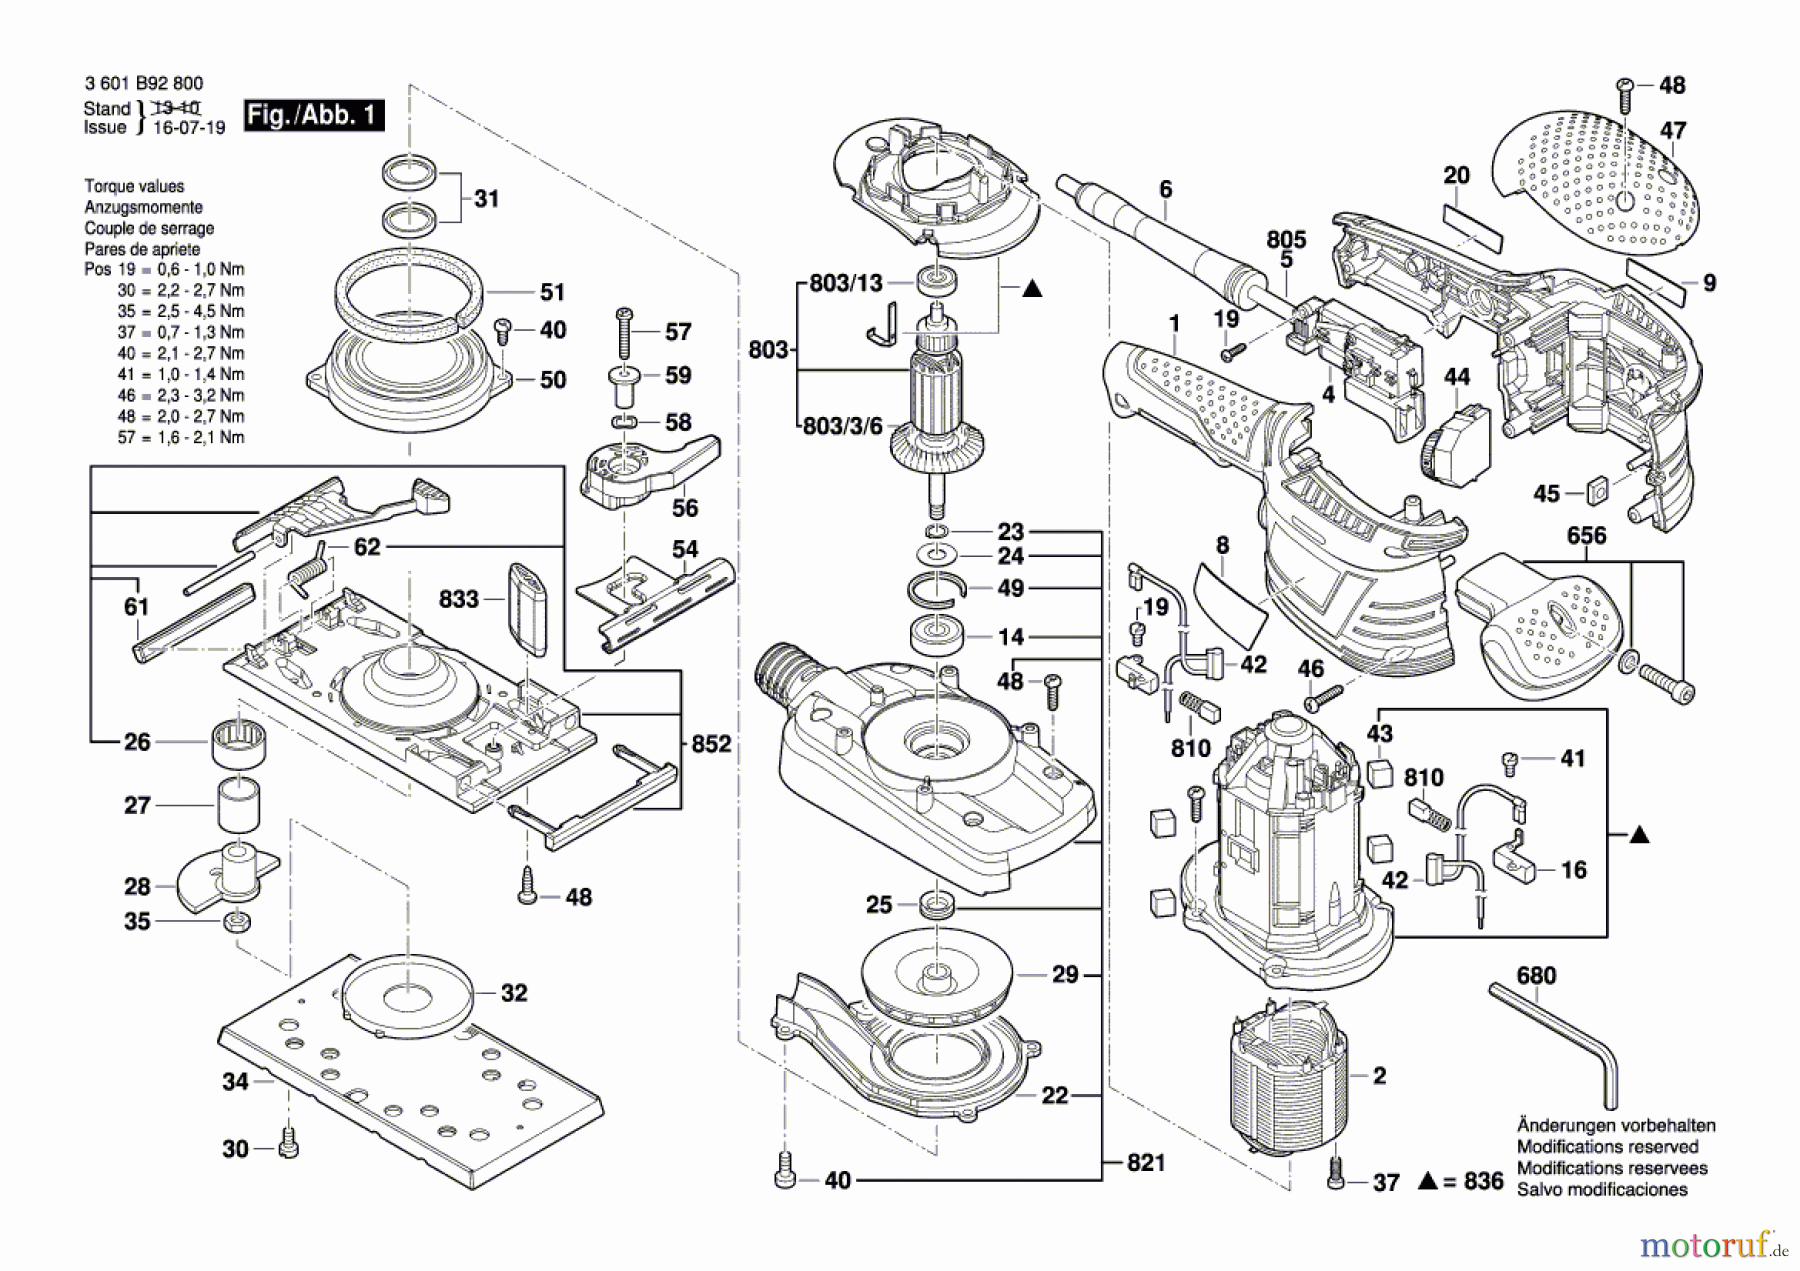  Bosch Werkzeug Schwingschleifer GSS 230 AVE Seite 1